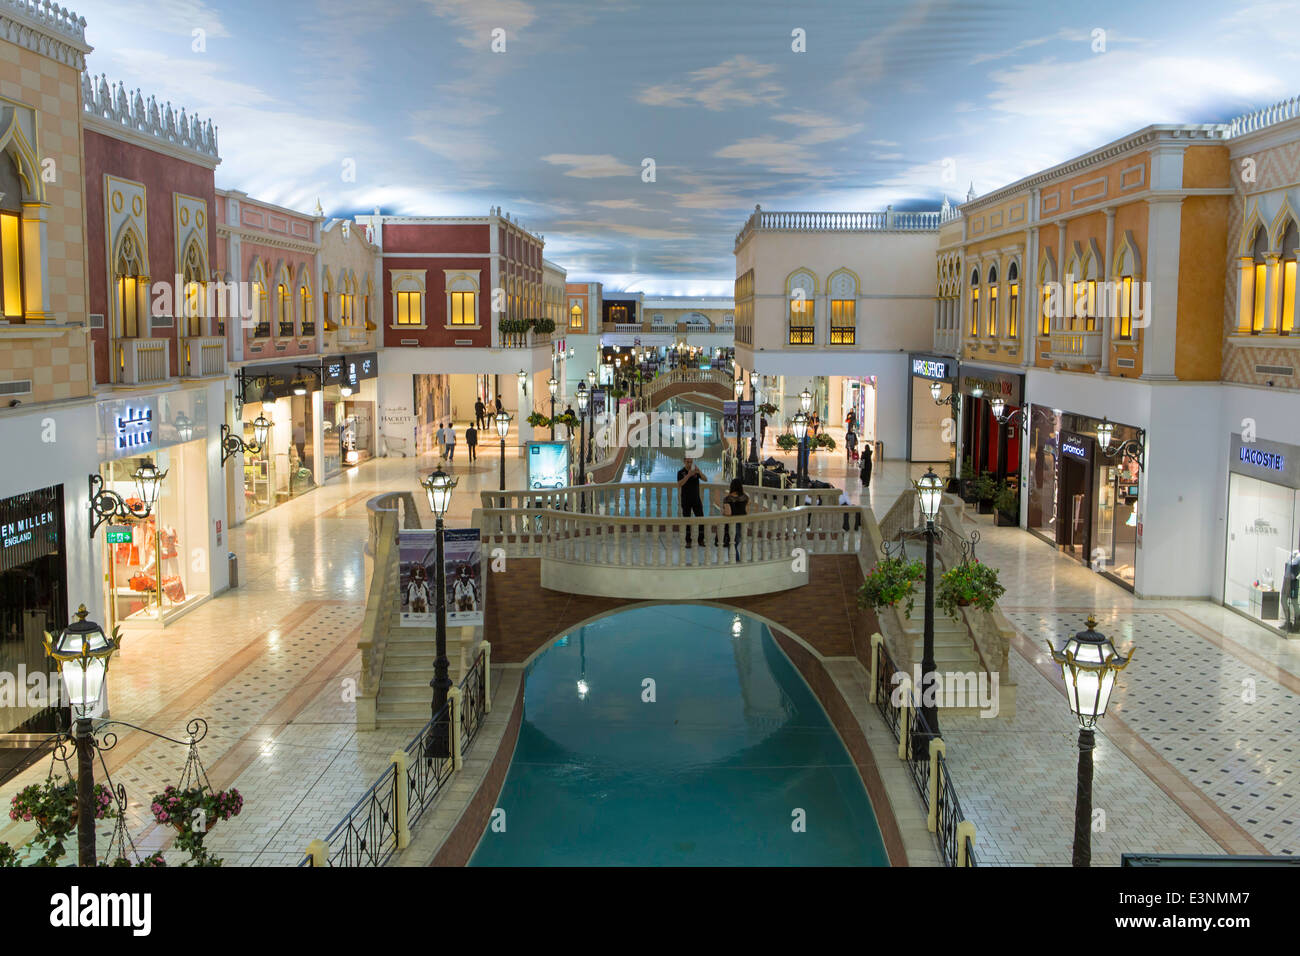 Qatar, Doha, Villaggio Mall, de l'intérieur Banque D'Images